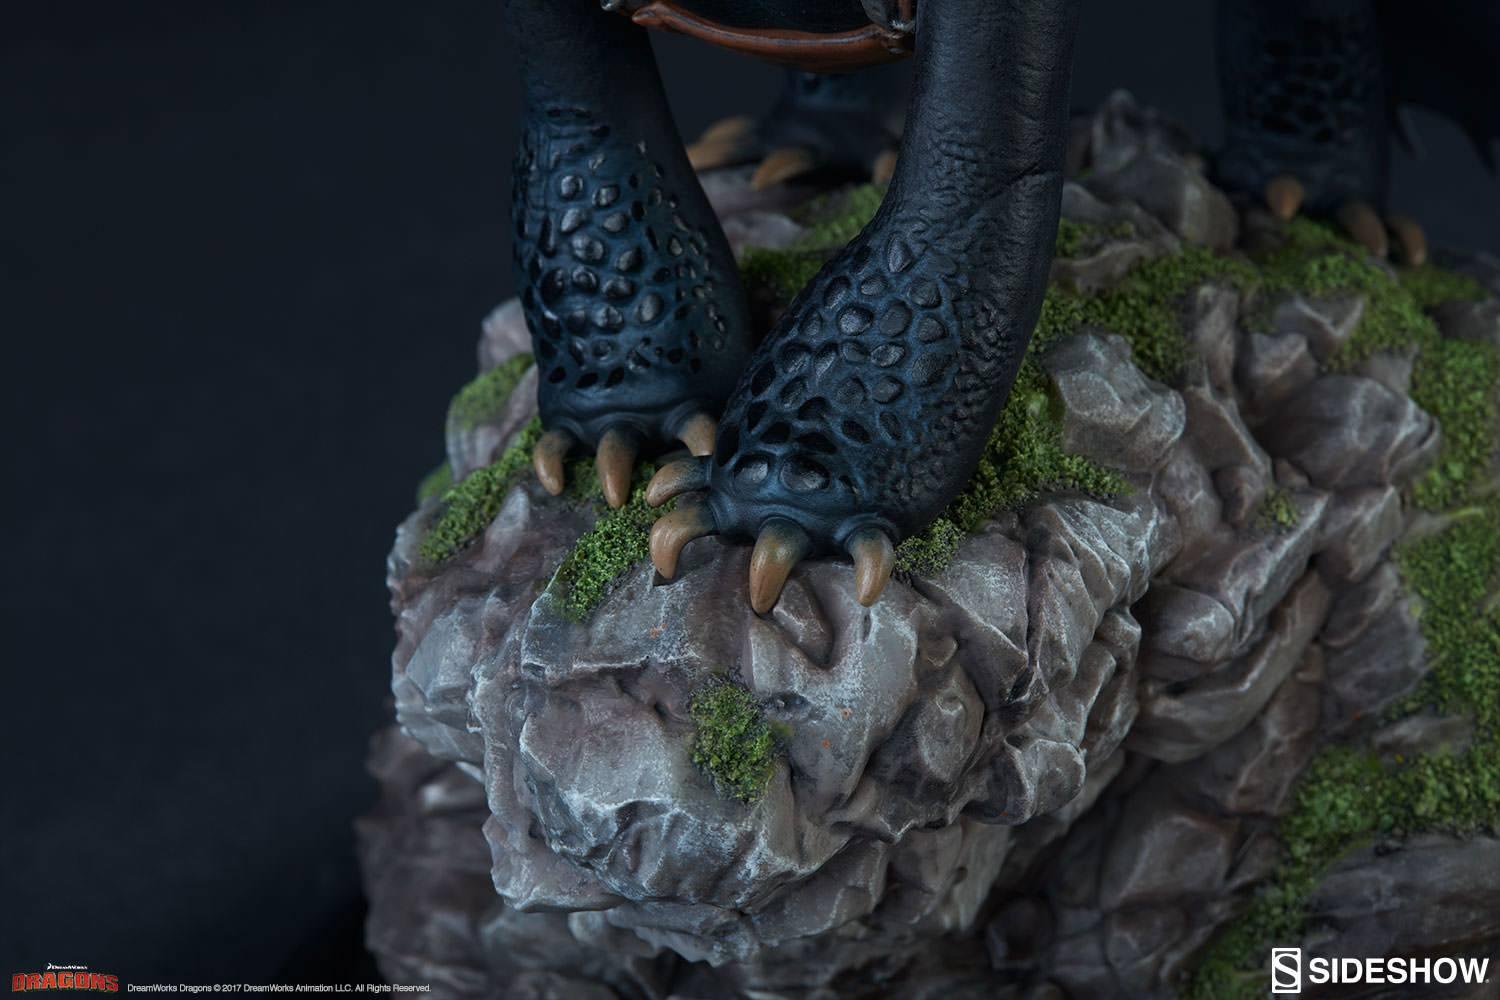 Statua - Toothless edizione limitata numerata 30 cm - DRAGON TRAINER - Magic Dreams Store